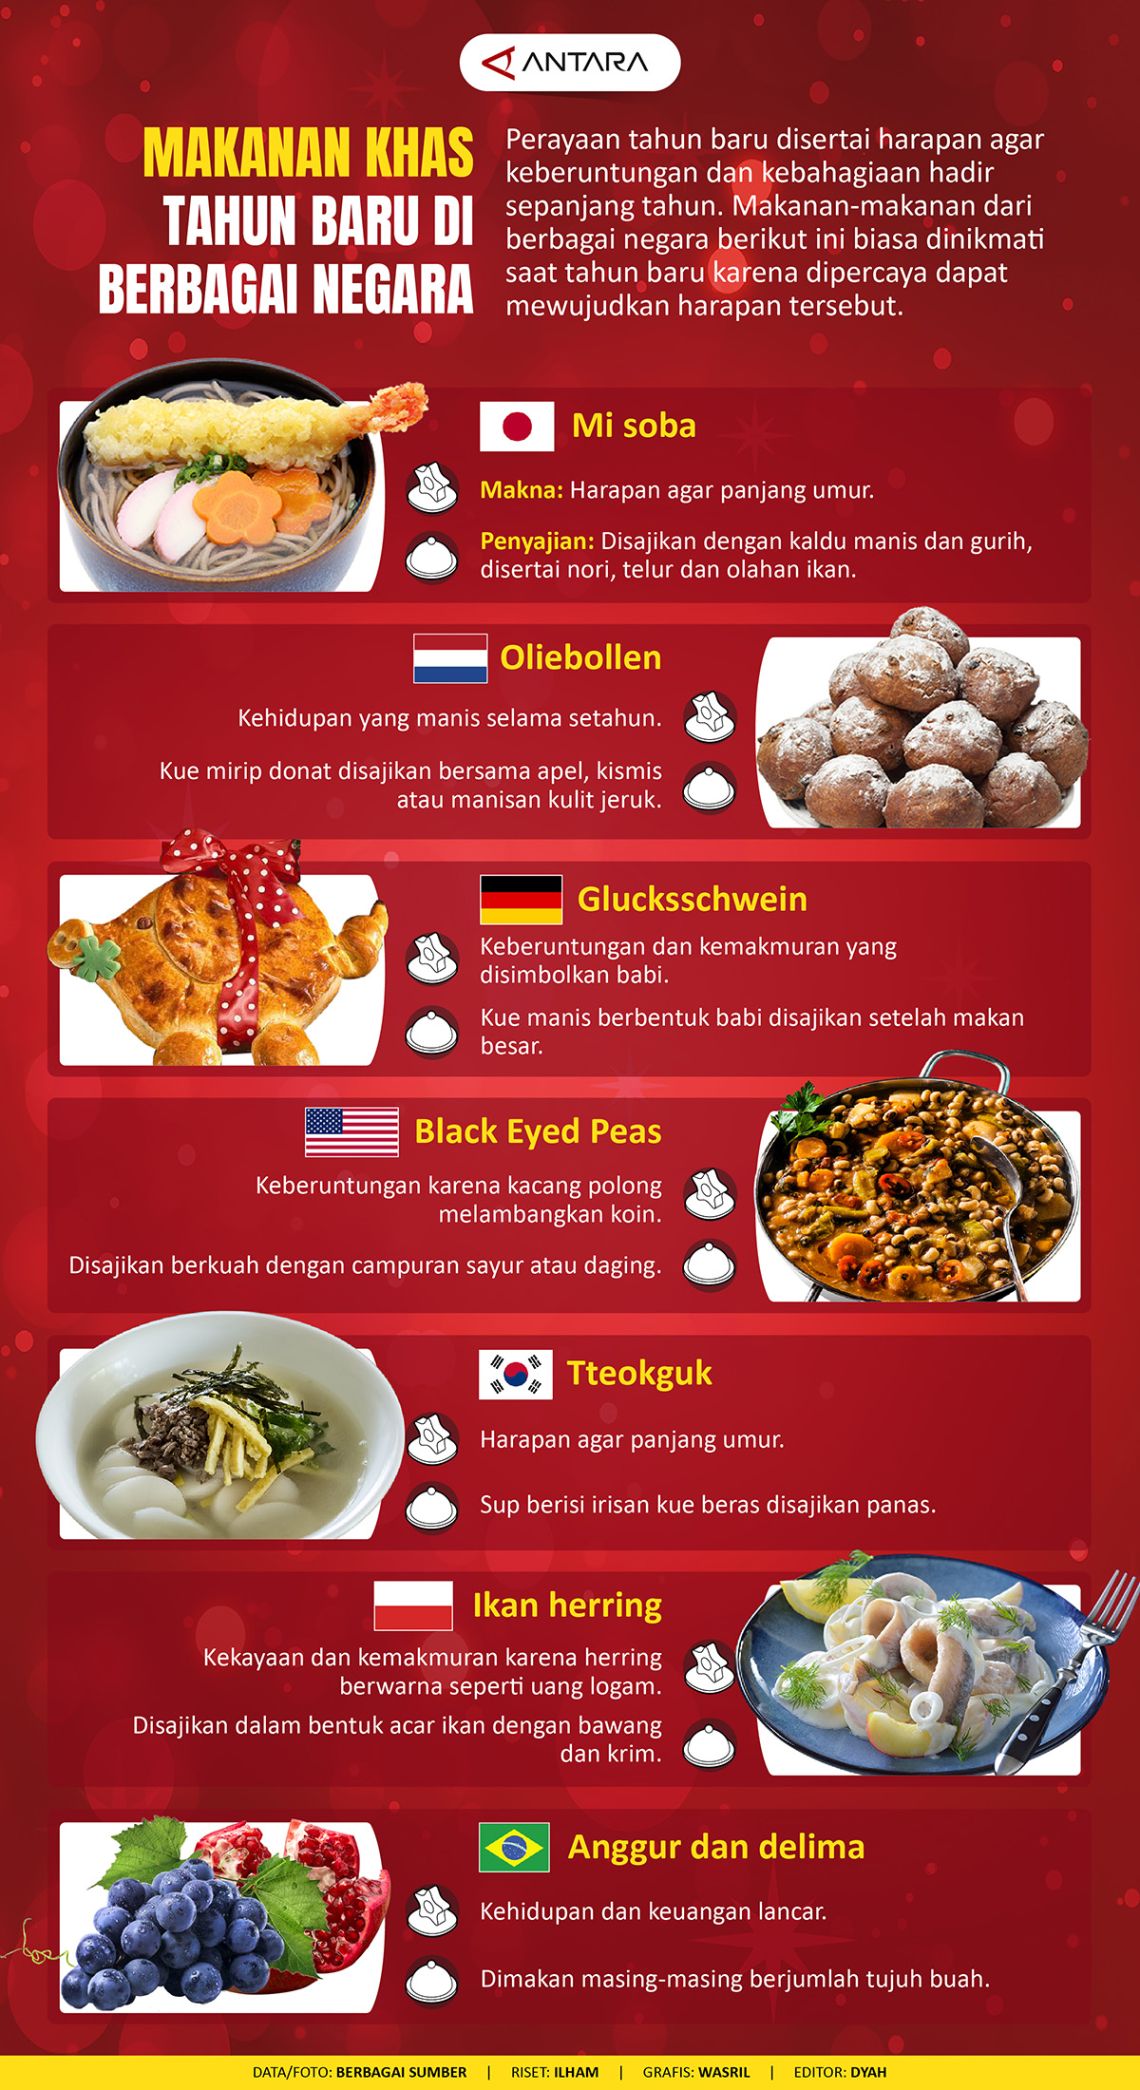 Makanan khas tahun baru di berbagai negara